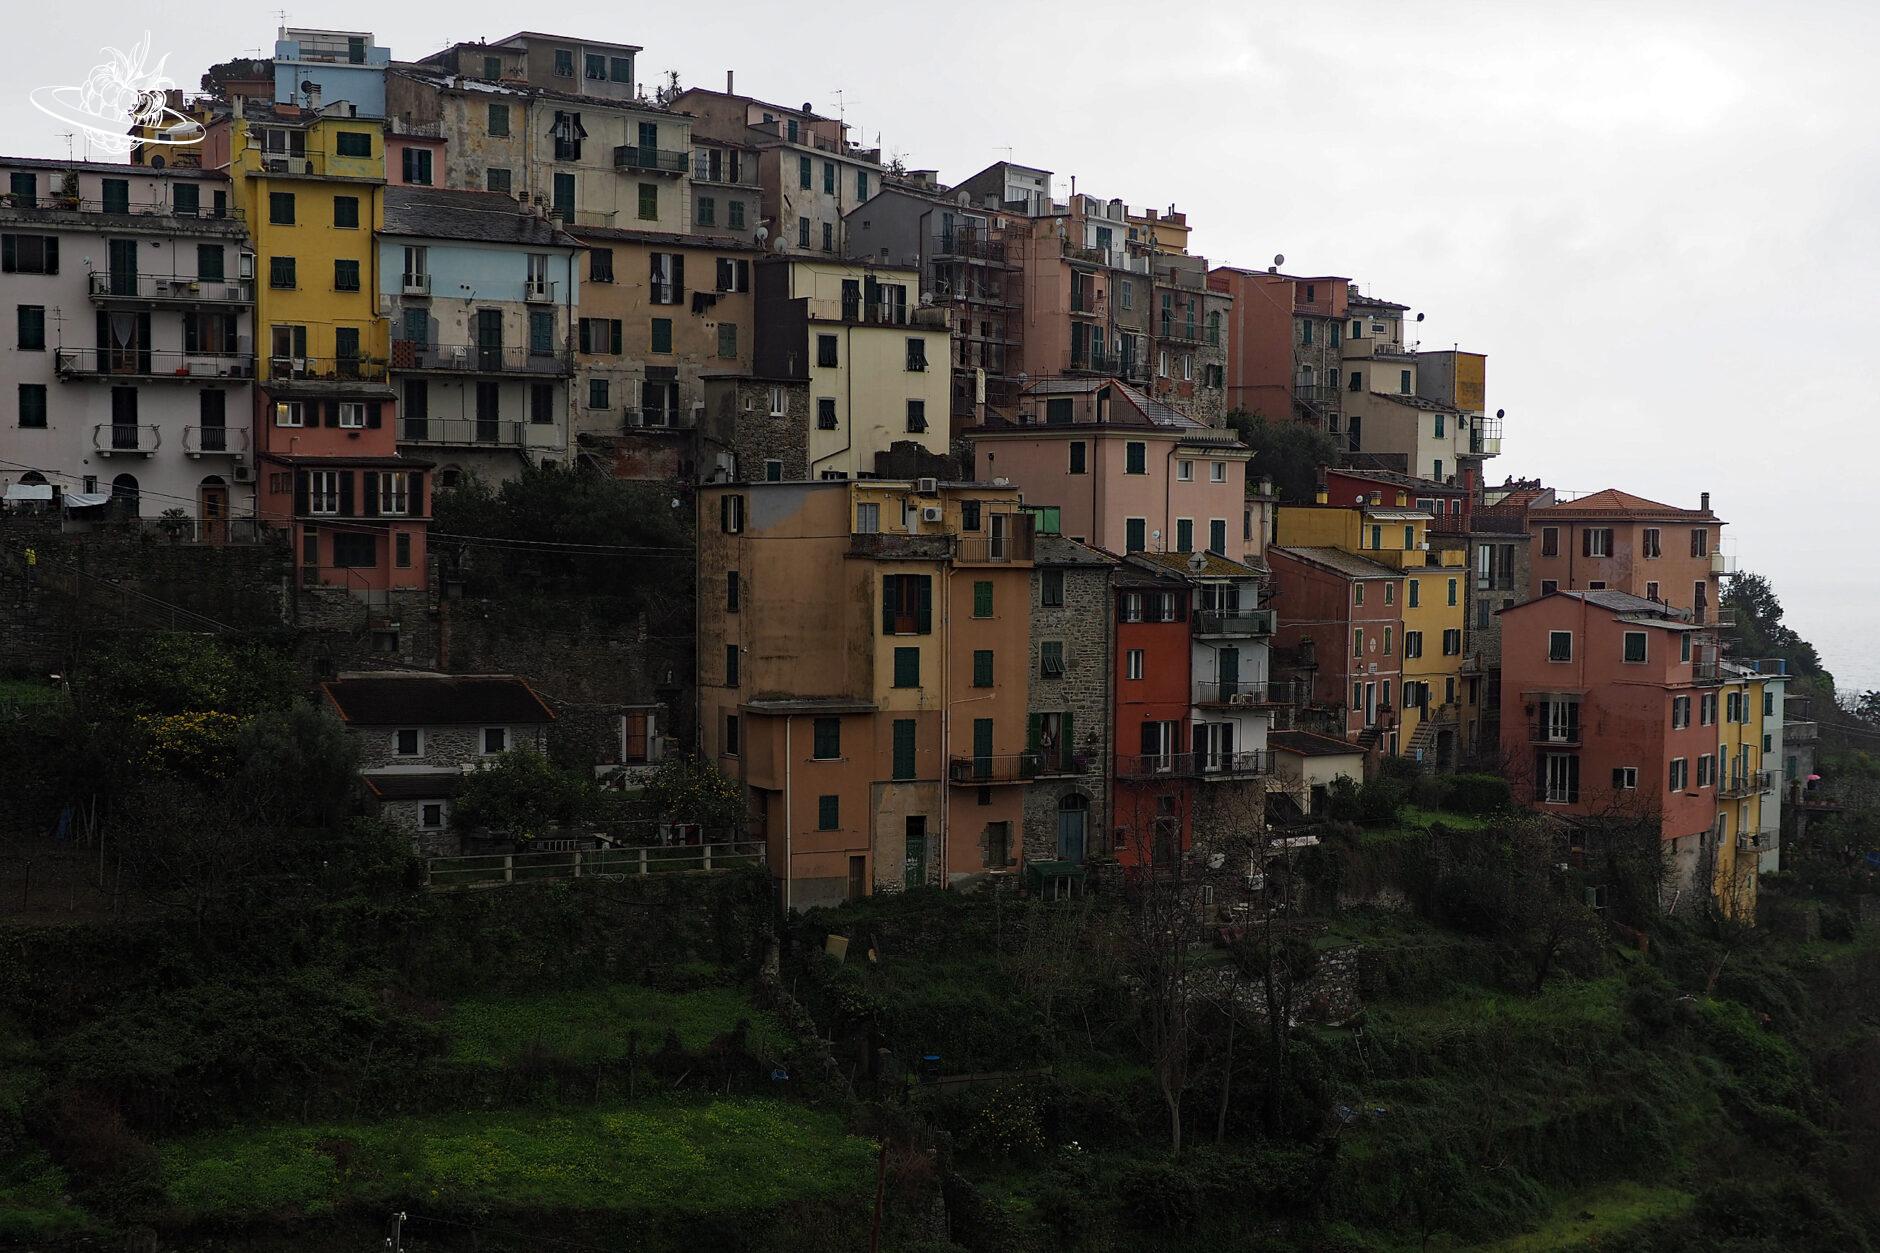 farbige Häuser auf einem Hügel